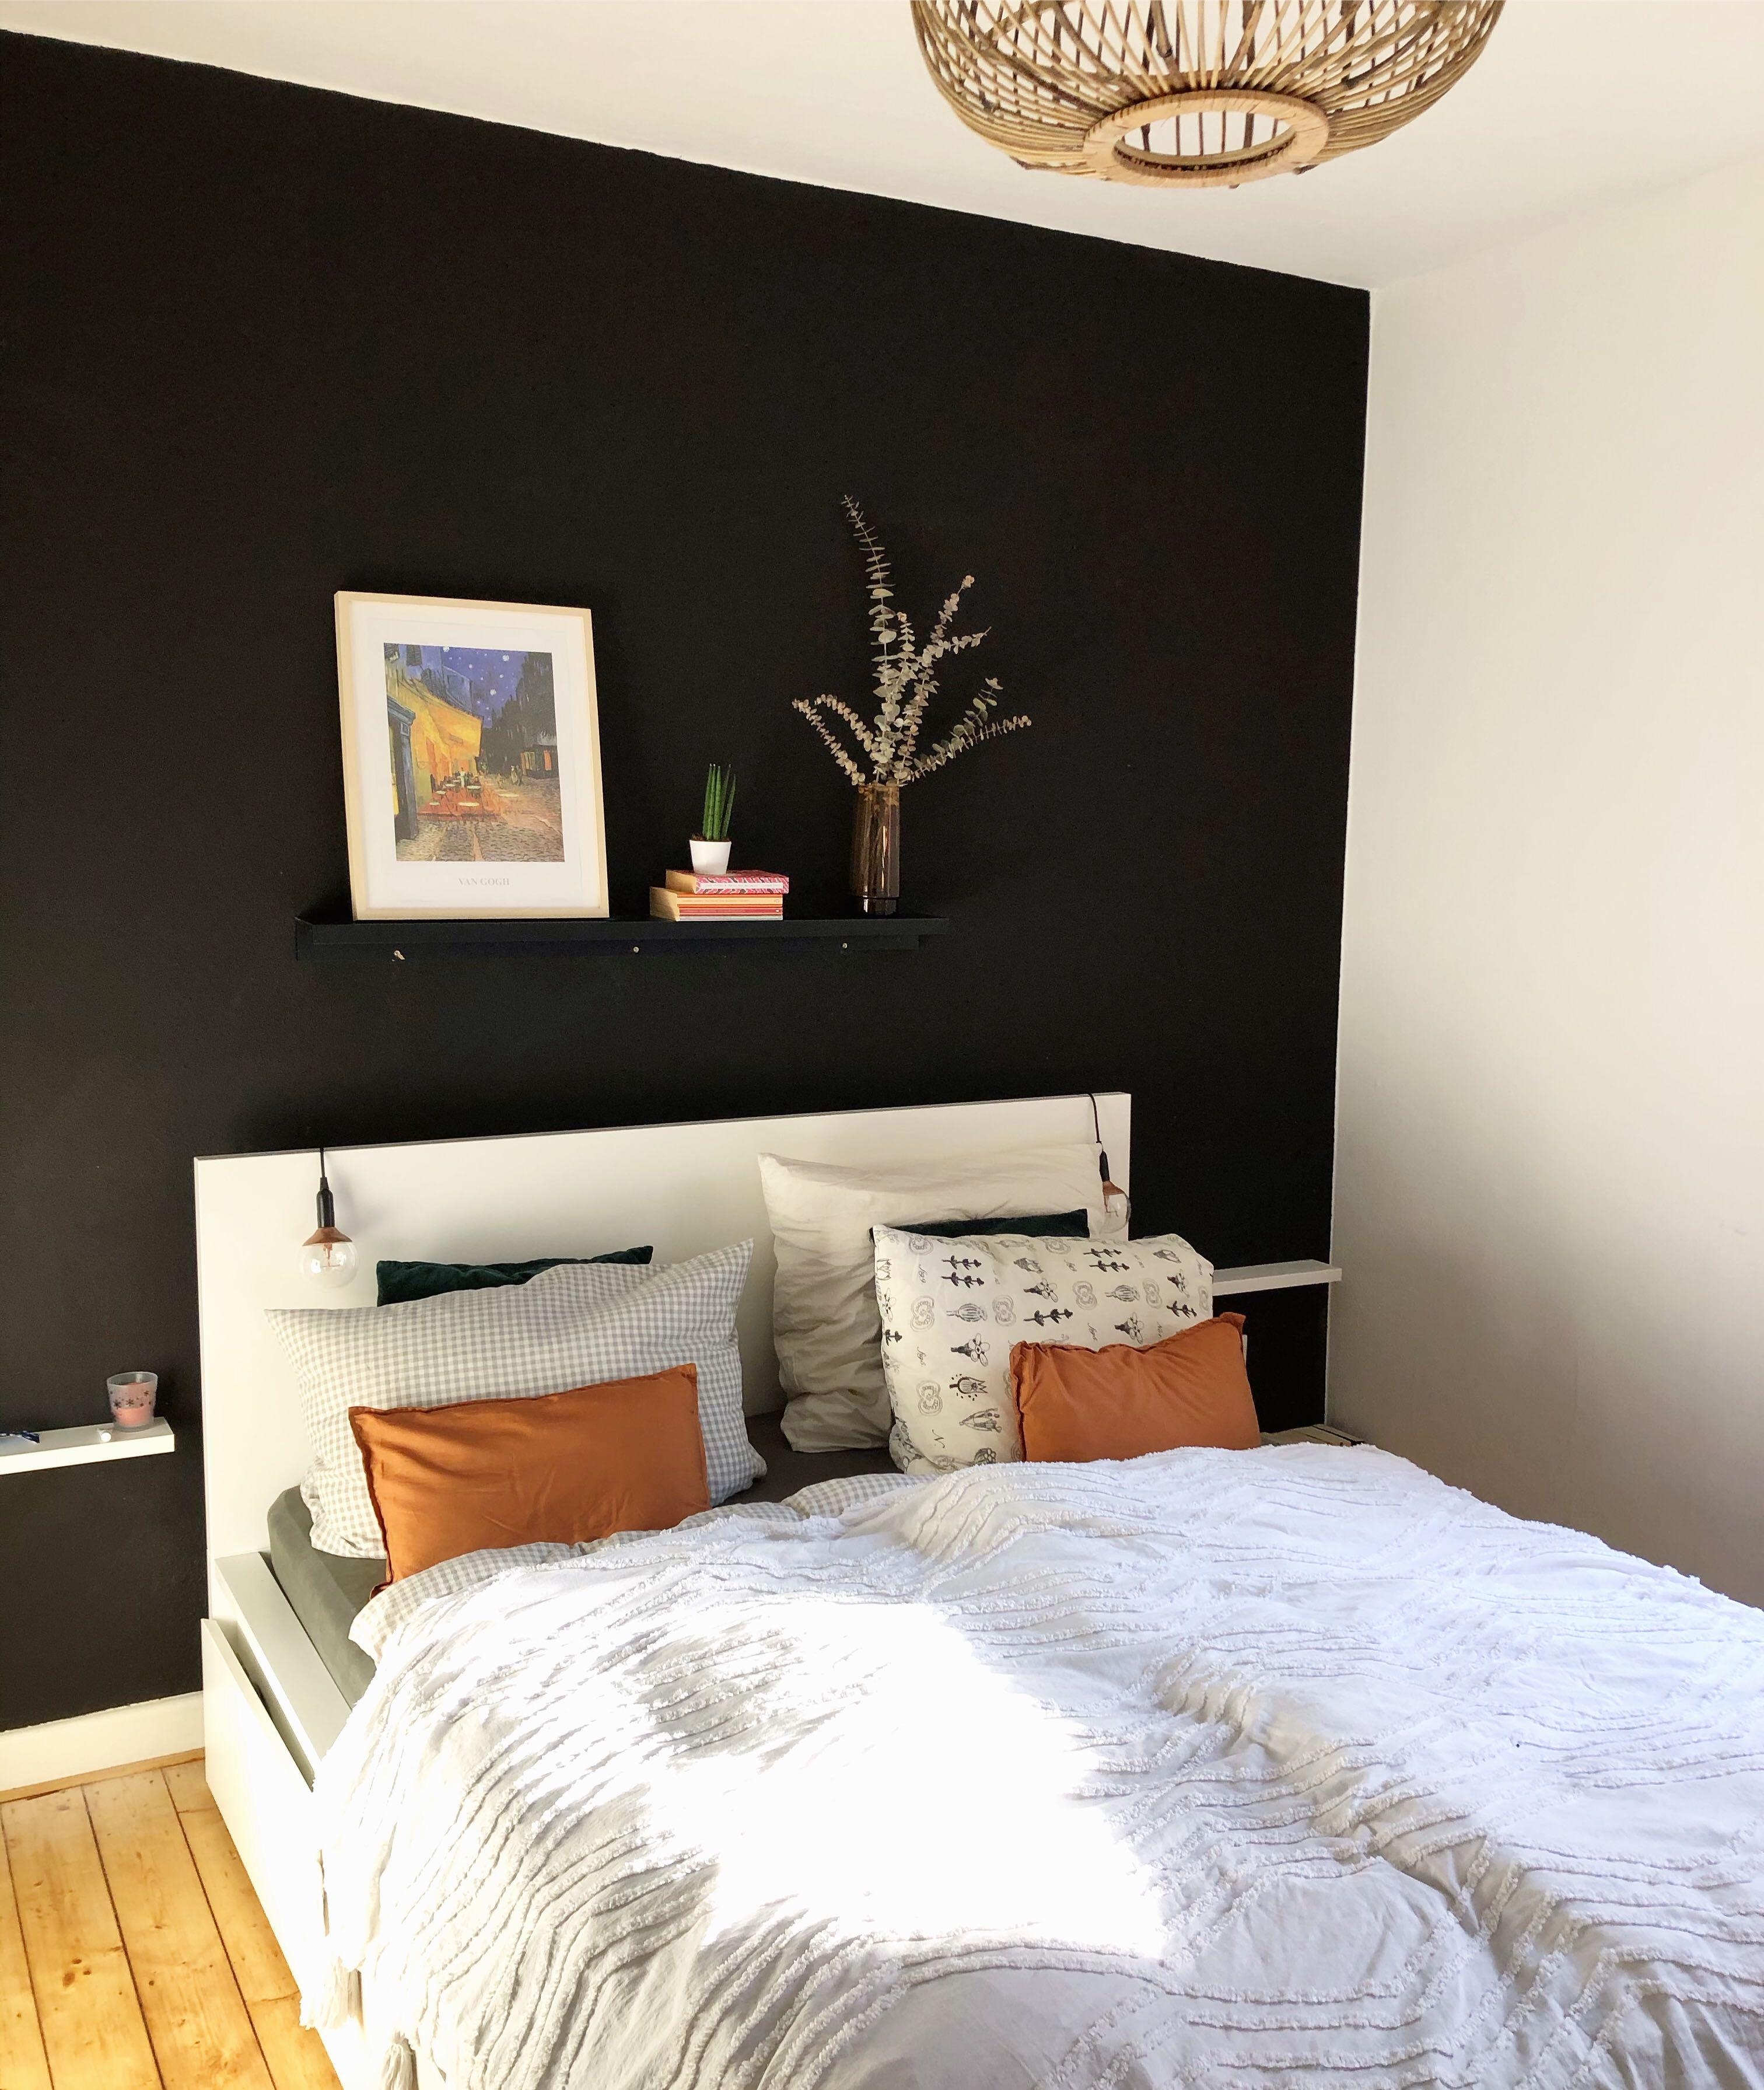 Meine neue Lieblingswandfarbe: Schwarz. #schlafzimmer #blackwall #schlafzimmerliebe #couchstyle